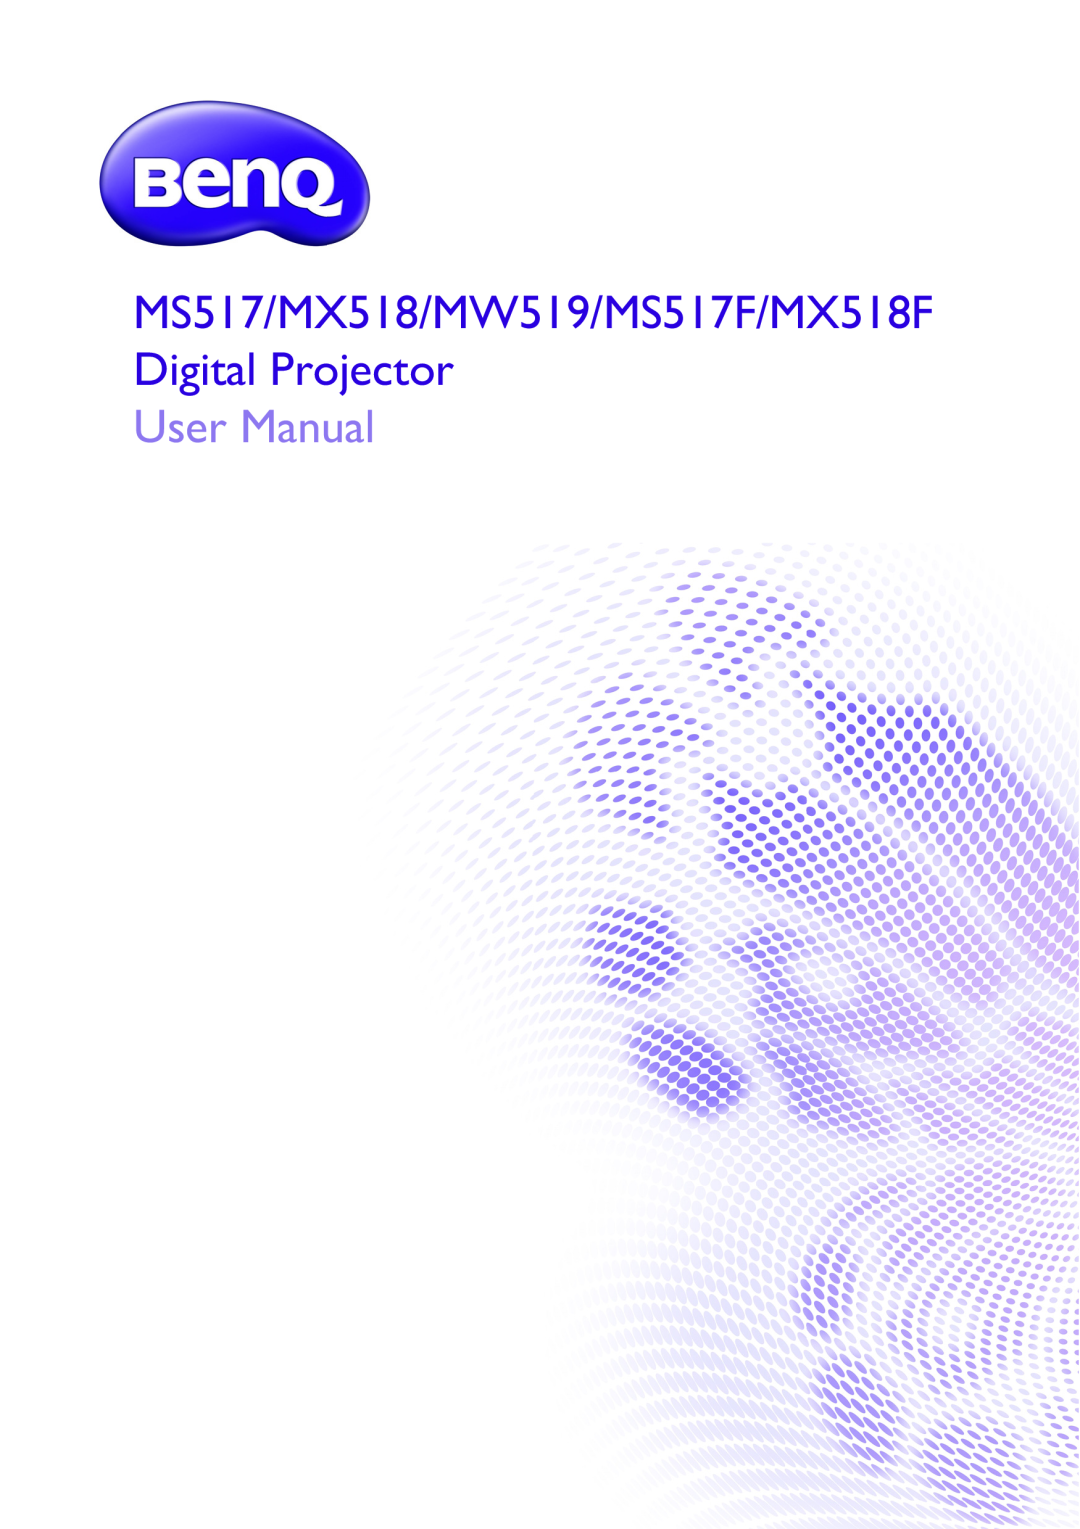 BenQ user manual User Manual, MS517/MX518/MW519/MS517F/MX518F Digital Projector 